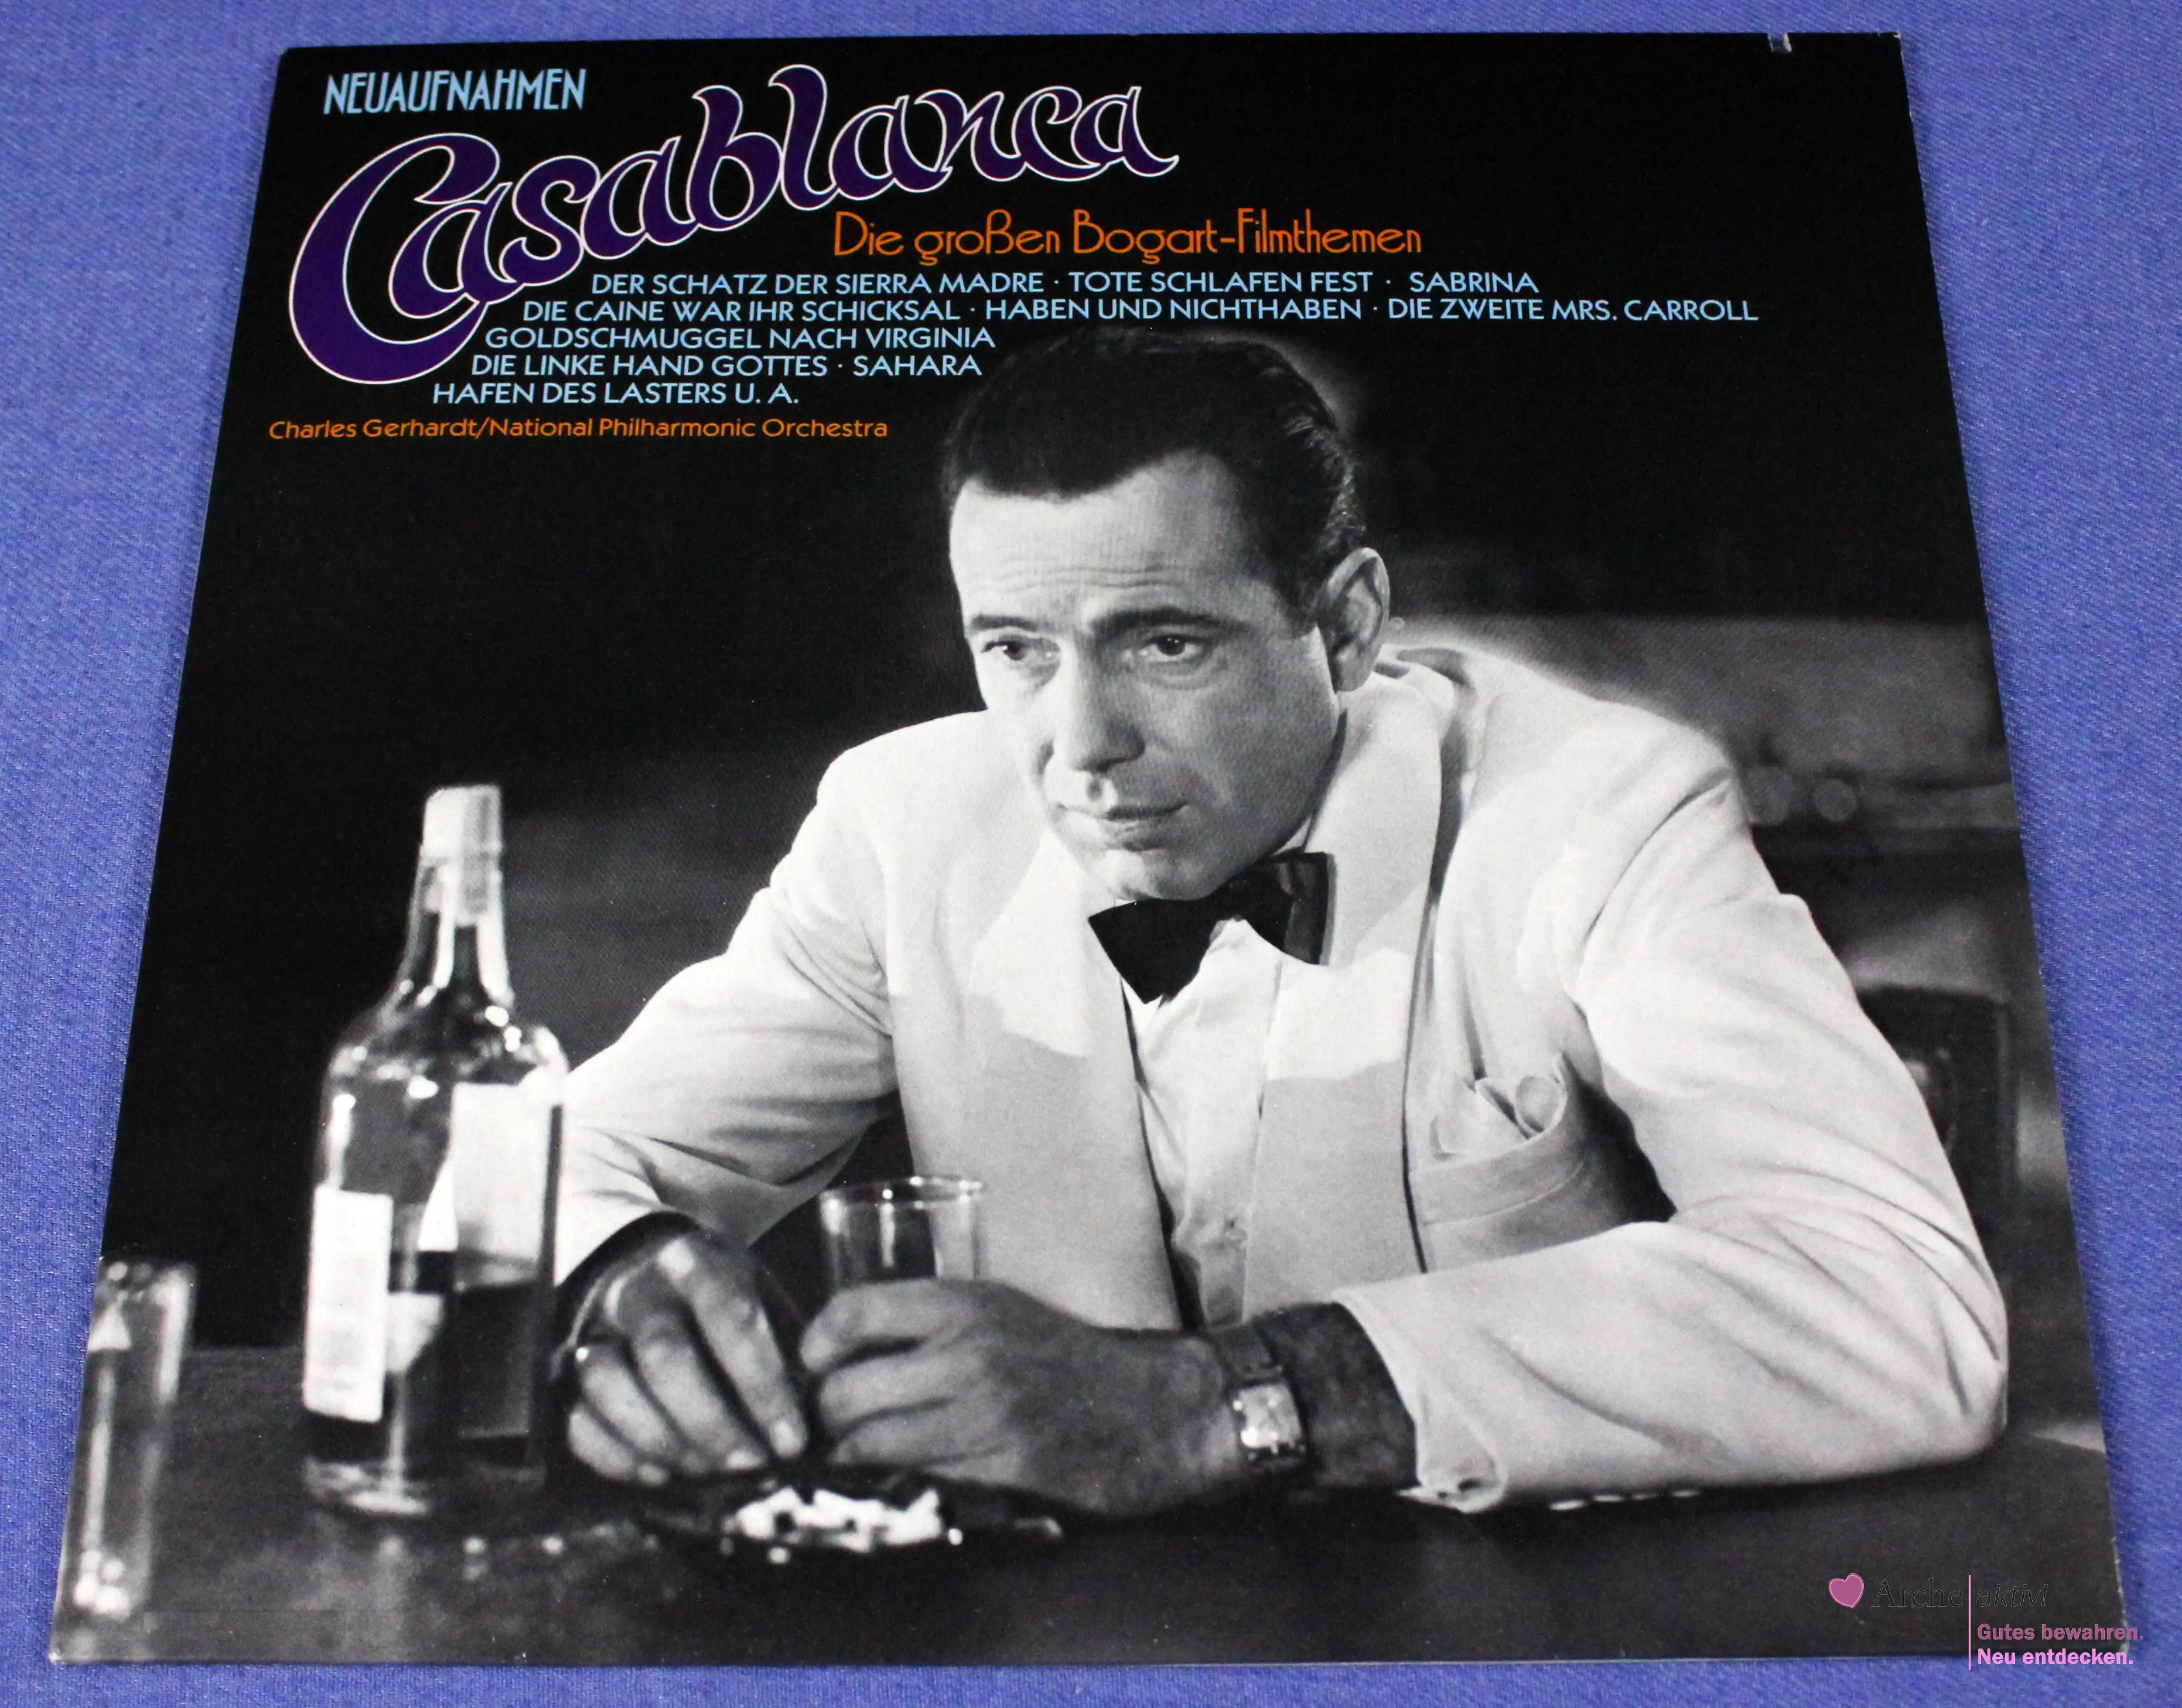 Casablanca - Die Großen Bogart-Filmthemen - Neuaufnahmen (Vinyl) LP, gebraucht